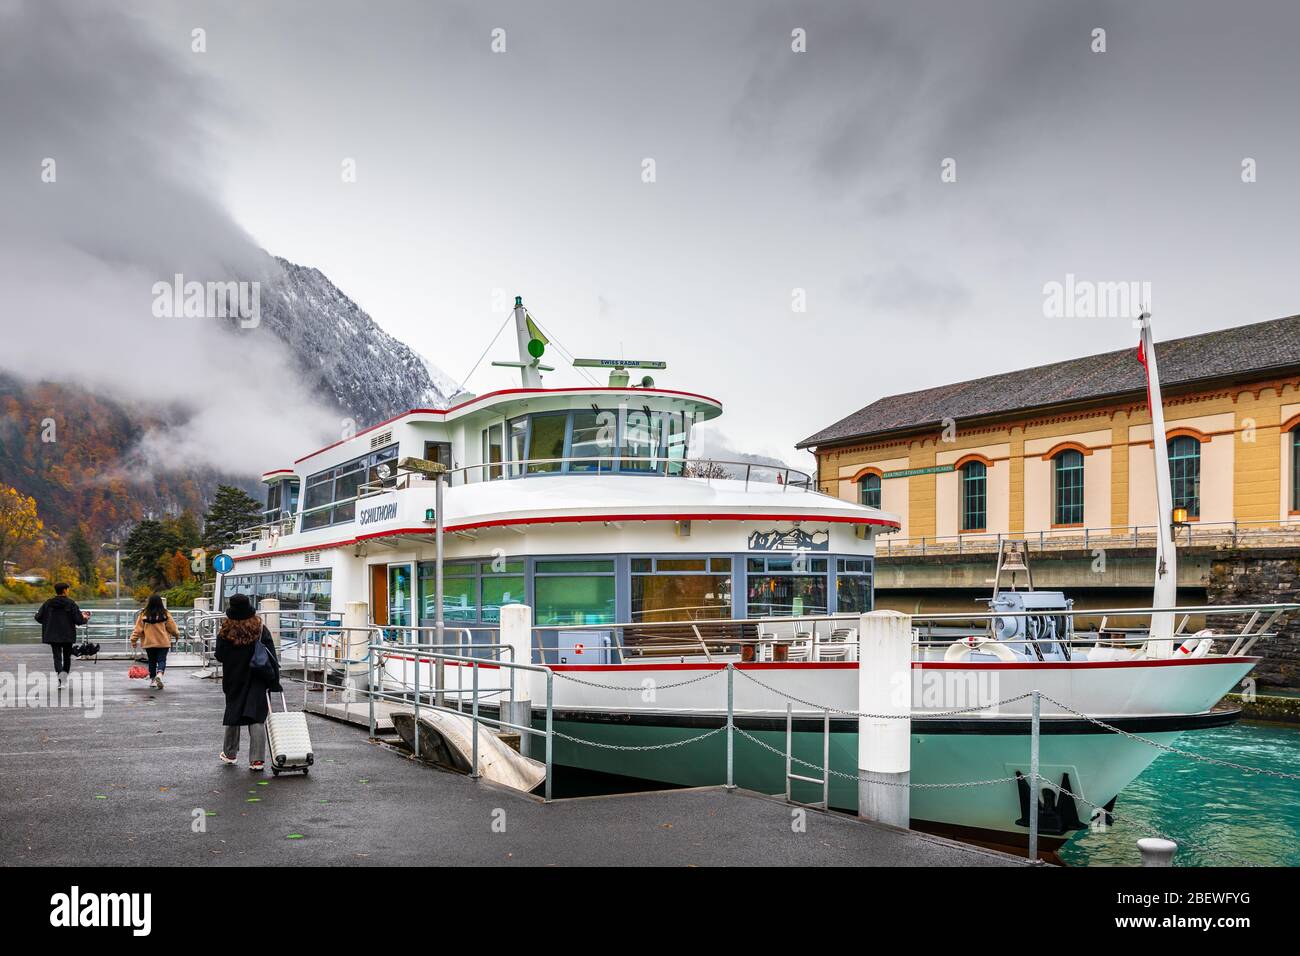 Interlaken, Suisse - 8 novembre 2019: Touristes avec des bagages marchant à bateau au port d'Interlaken Ouest pour visiter le lac de Thun. Banque D'Images